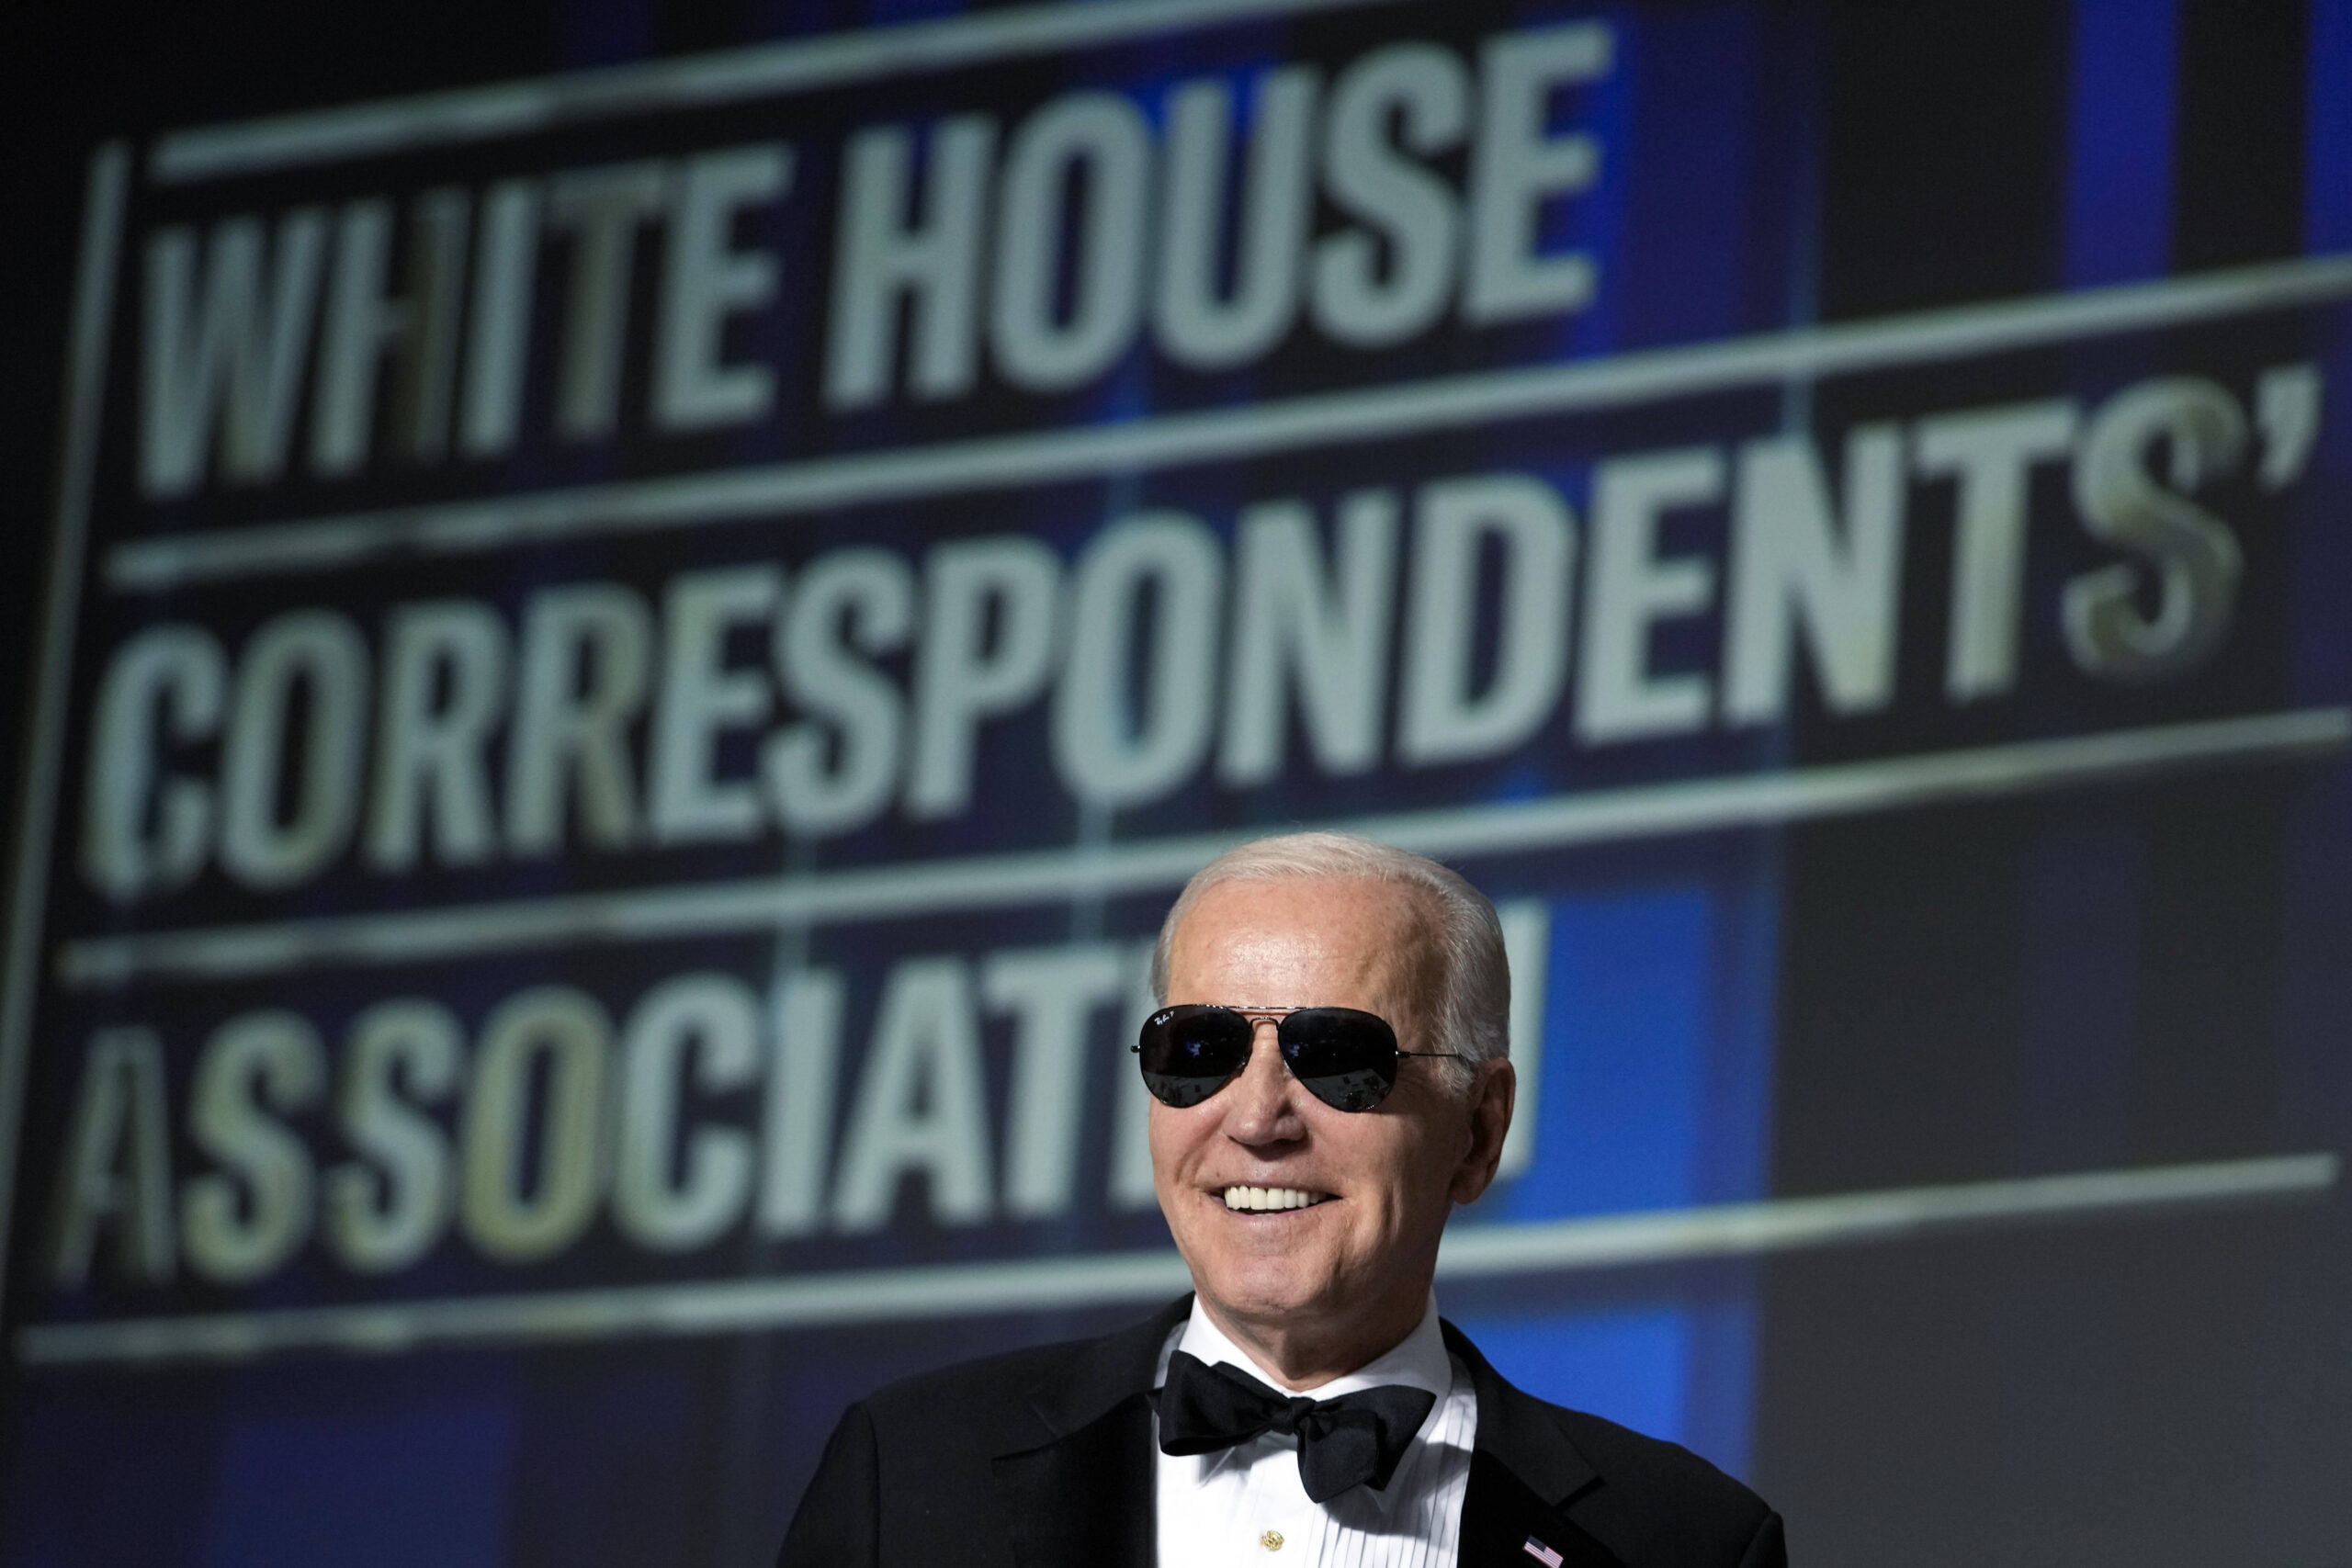 El presidente Joe Biden se pone gafas de sol tras bromear sobre convertirse en el personaje de 